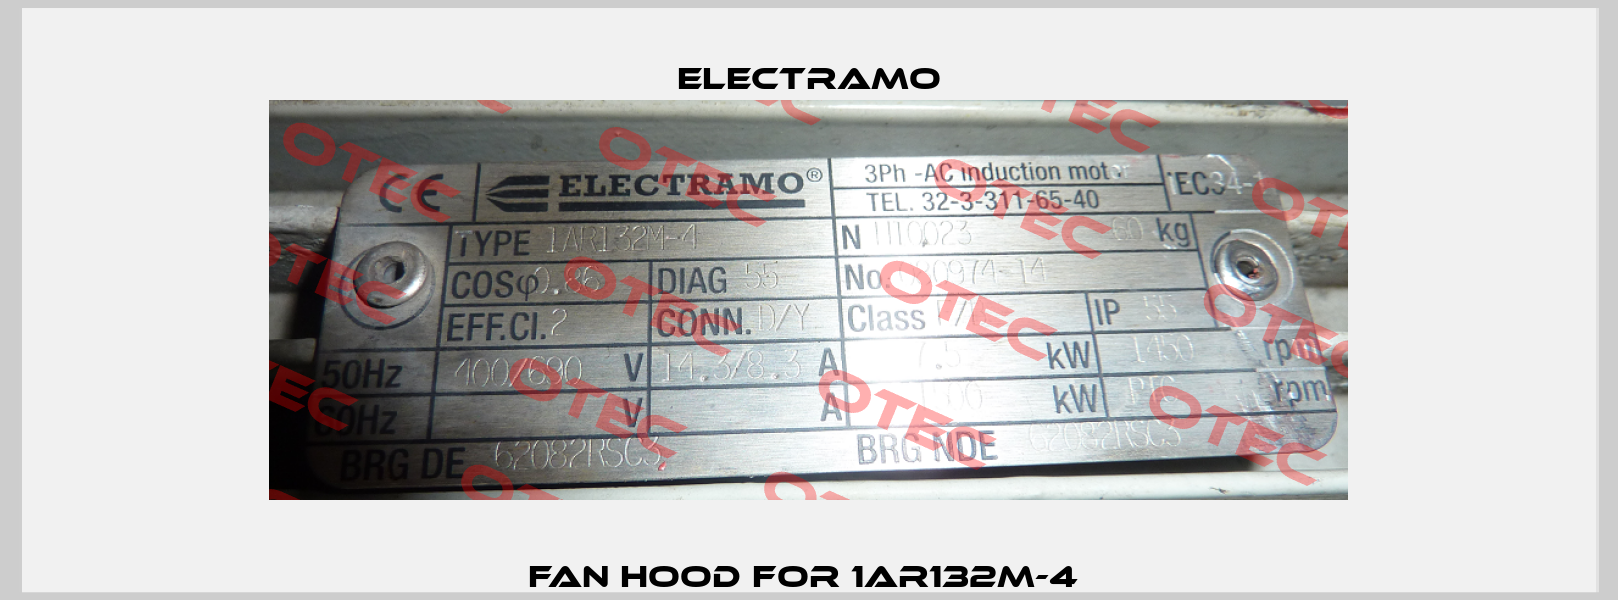 Fan hood for 1AR132M-4  Electramo